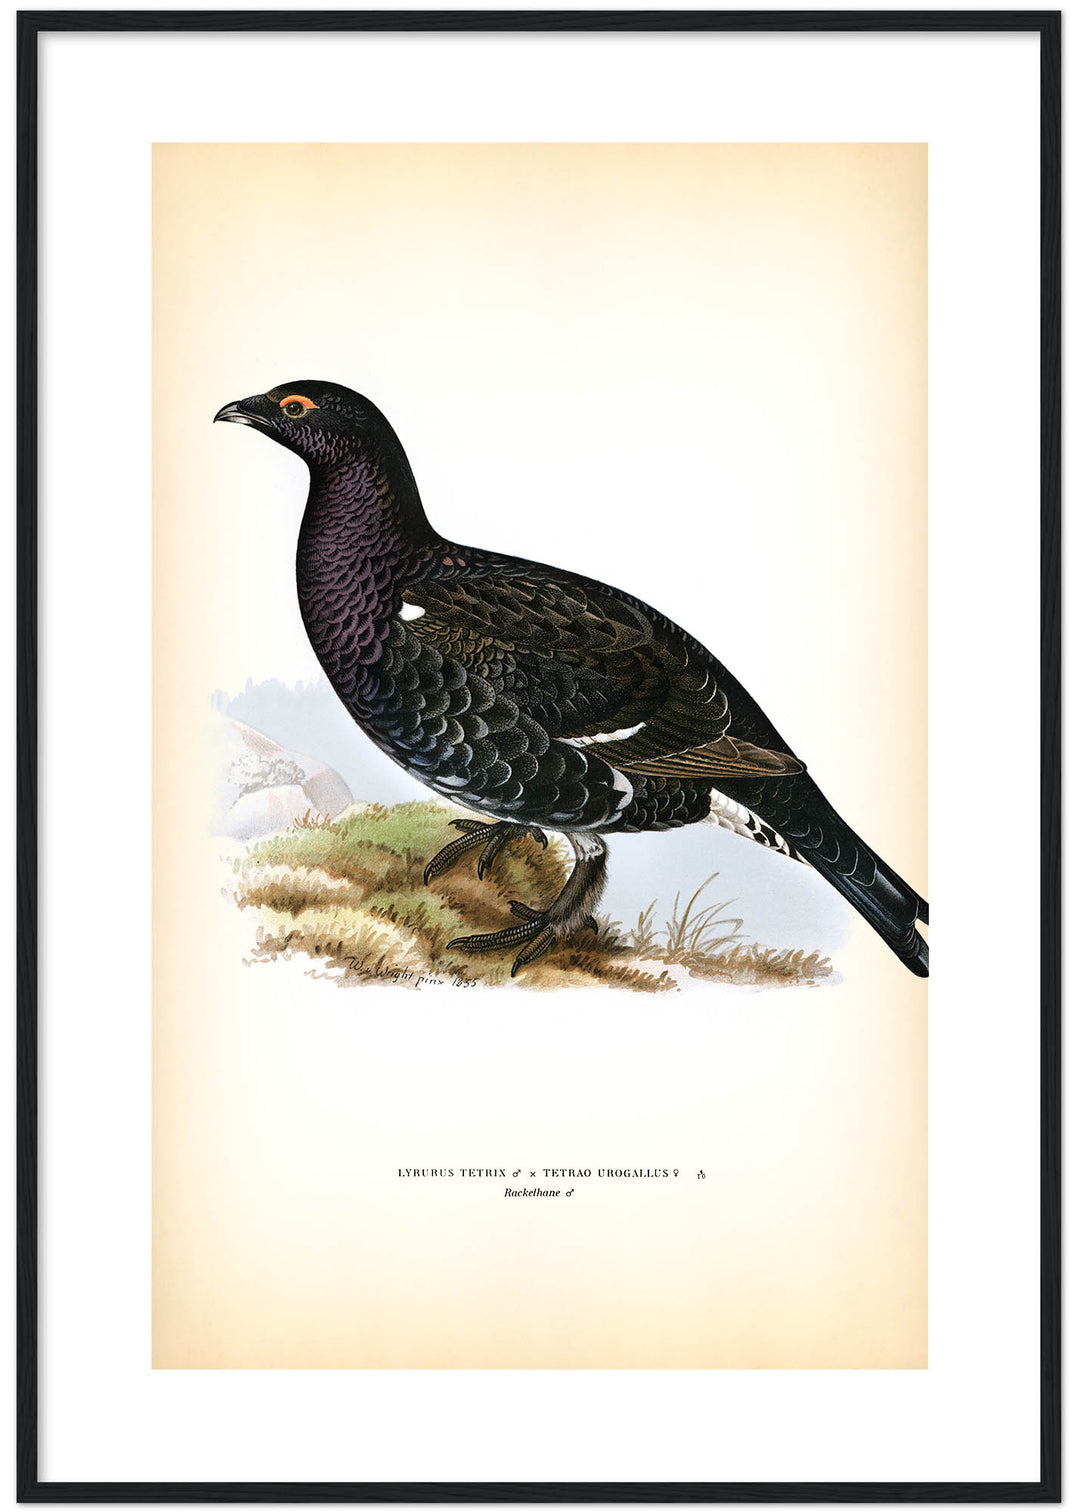 Fågeln Rackelhane på klassisk vintage poster/affisch